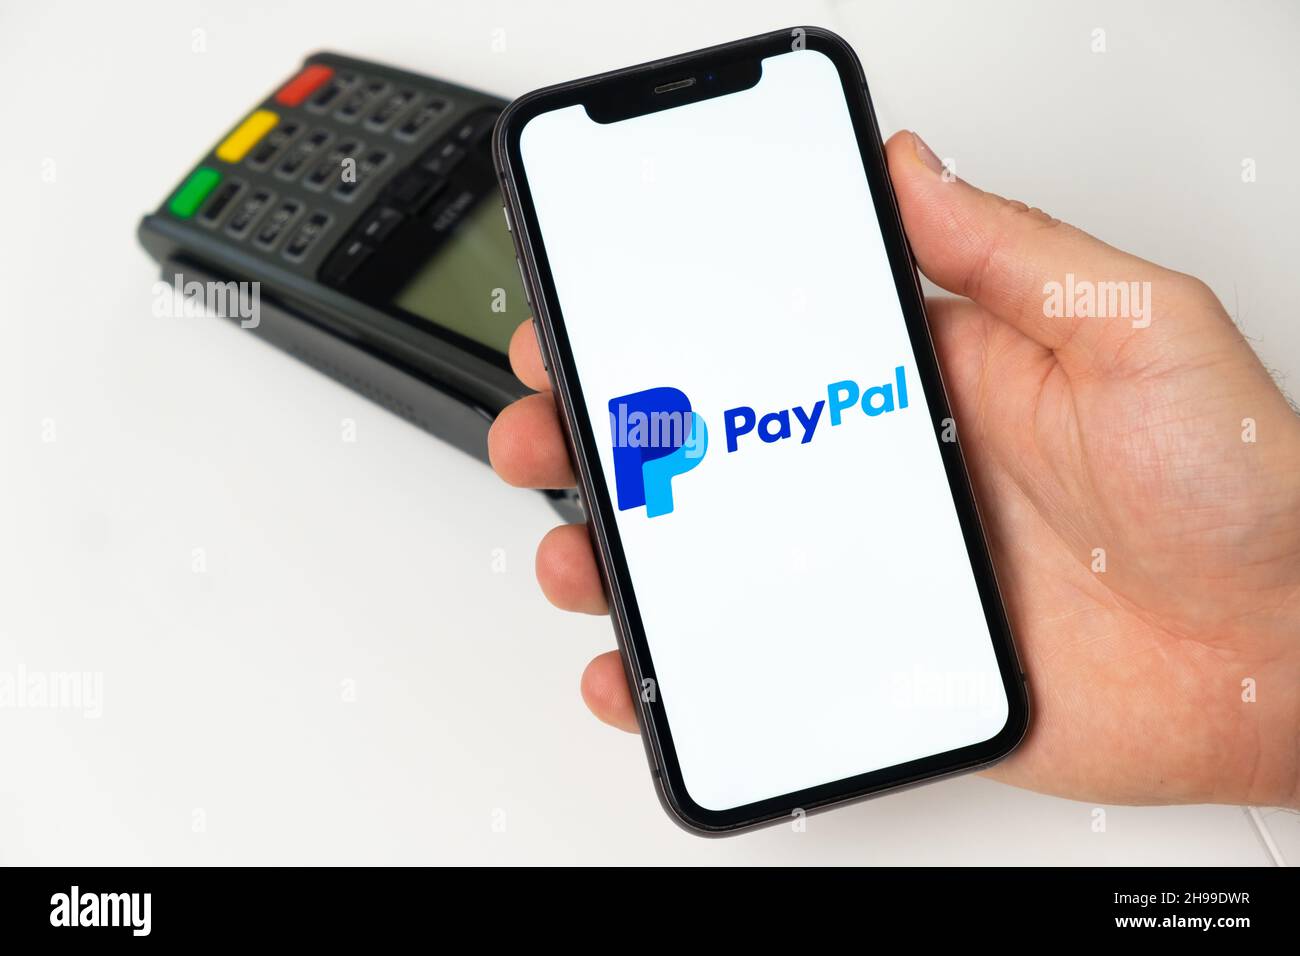 Applicazione mobile PayPal per il pagamento online. Un uomo utilizza un  telefono cellulare con app per il pagamento sicuro di servizi o merci per  il pagamento senza contatto tramite terminale POS. Novembre